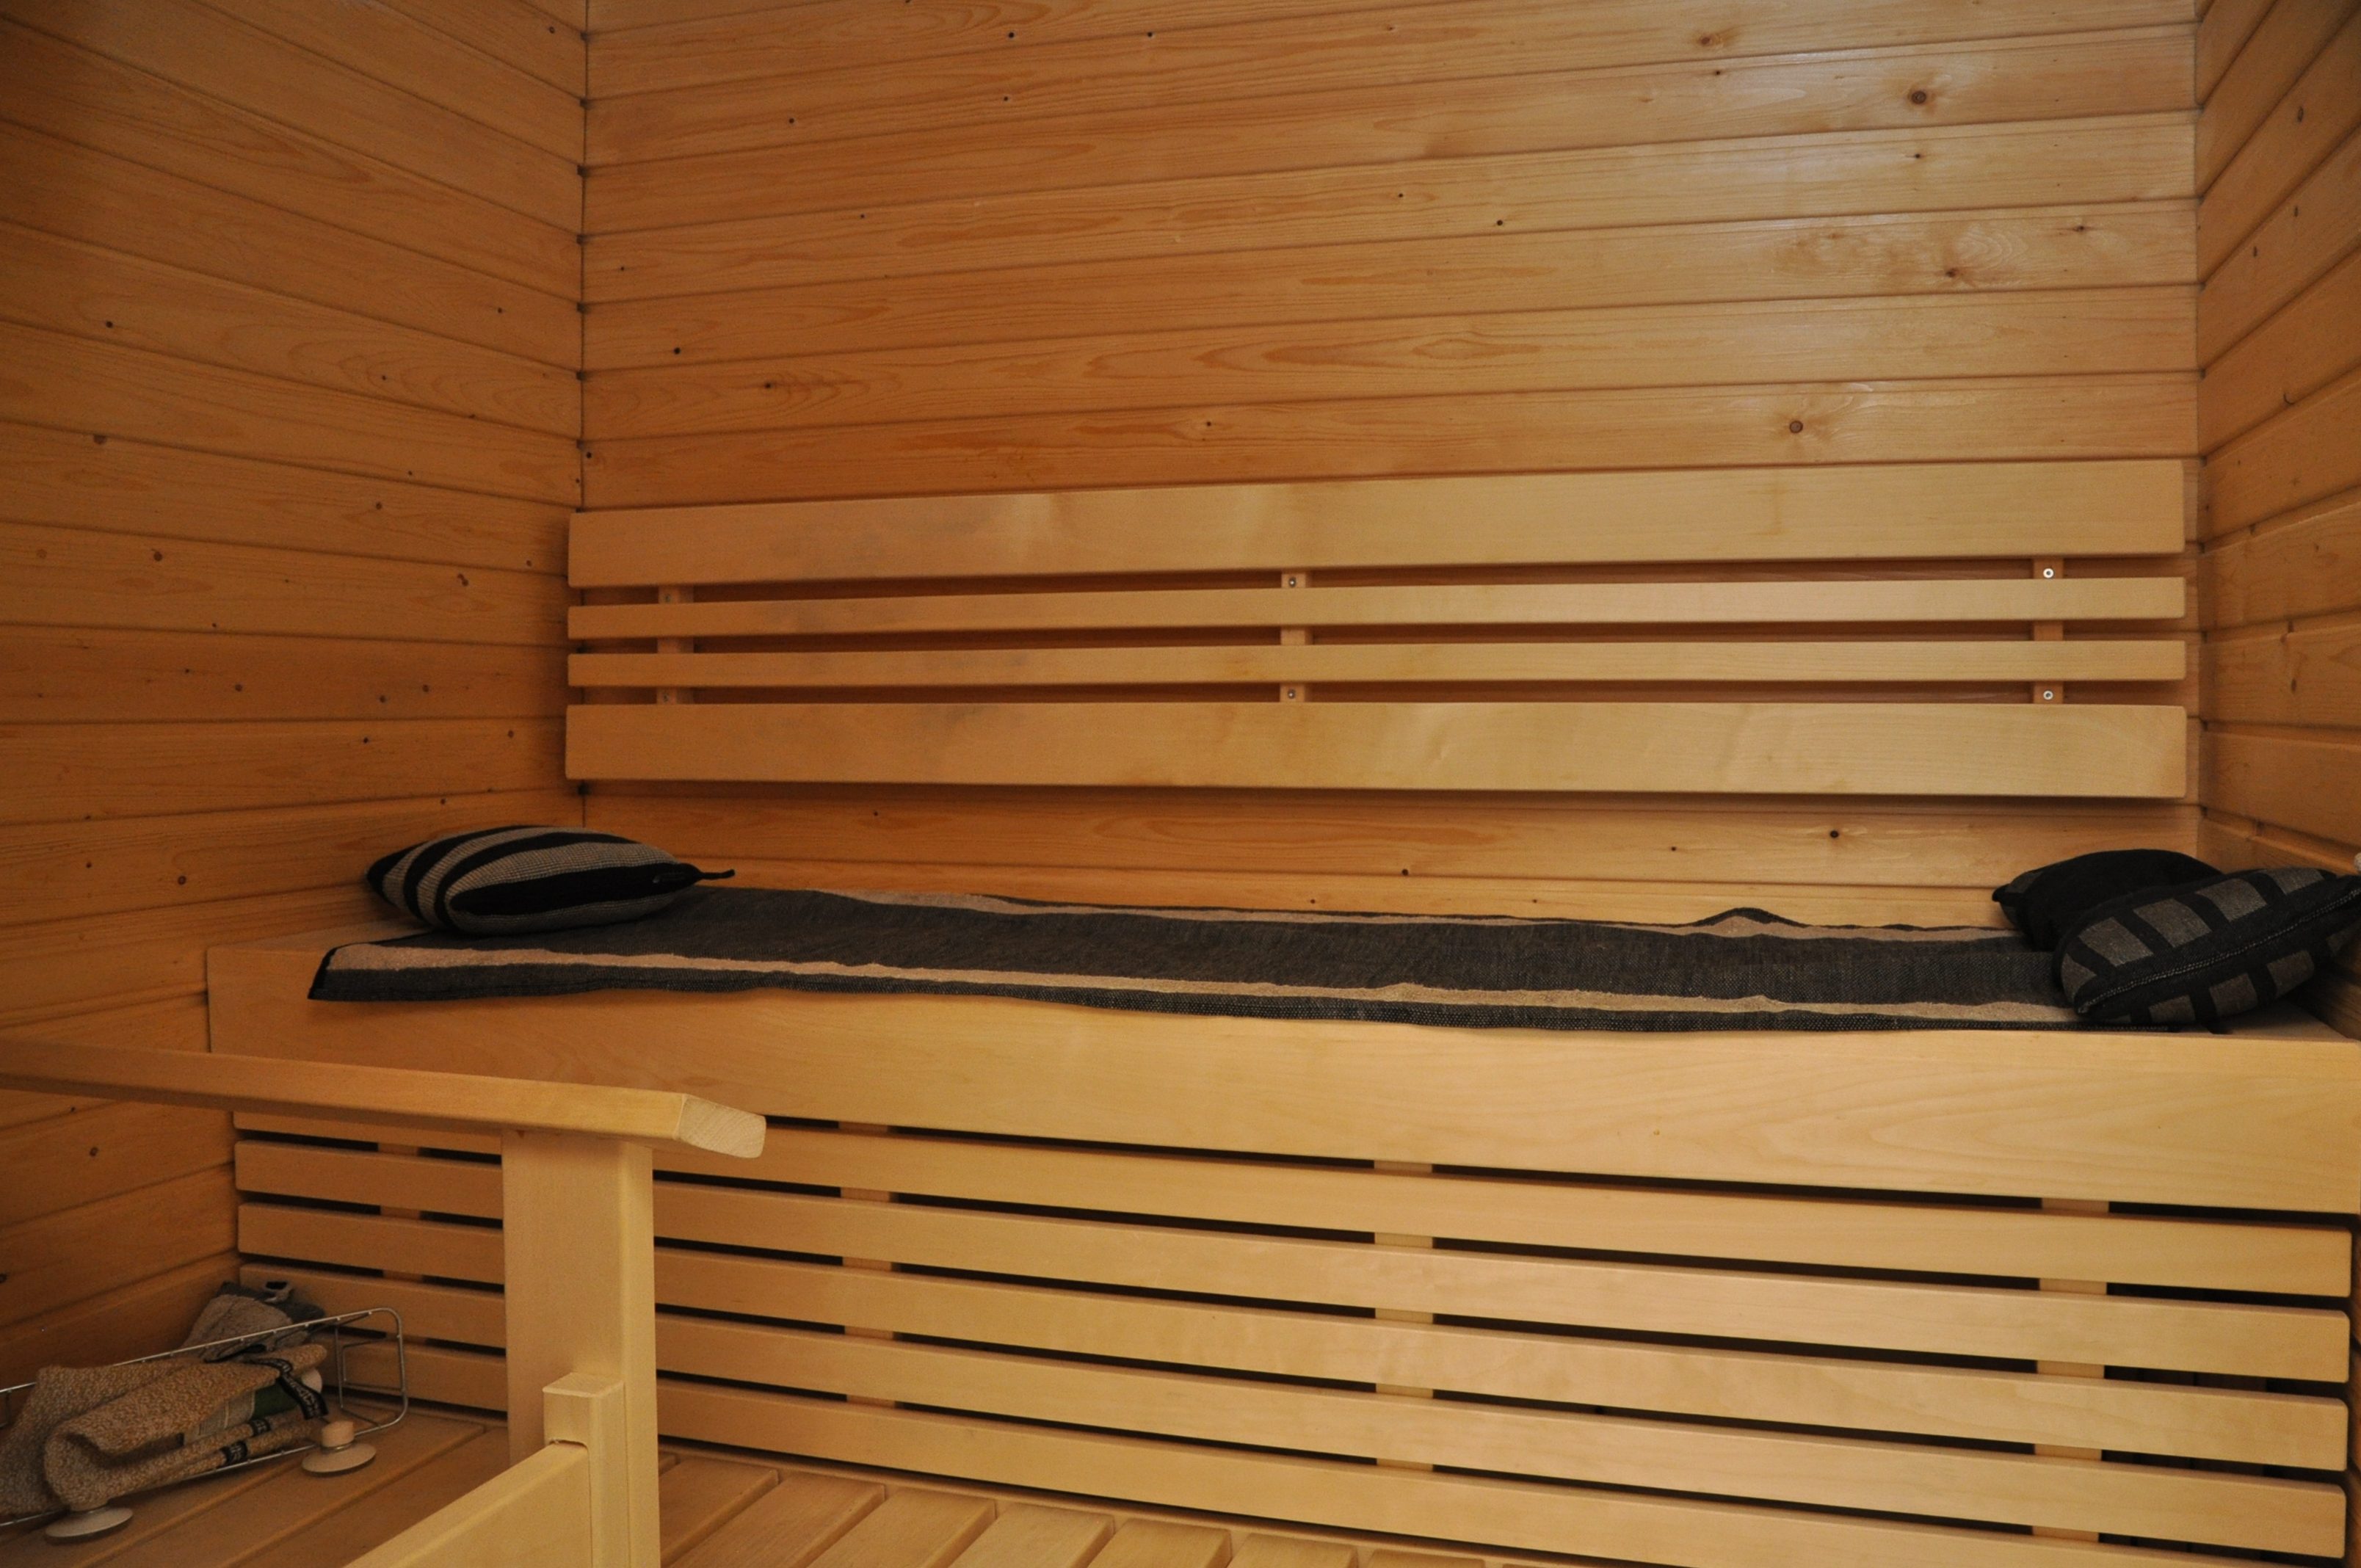 Nyt olisi vuokrattavana valoisa saunallinen kaksio erittäin keskeiseltä sijainnilta Lauttasaaresta!